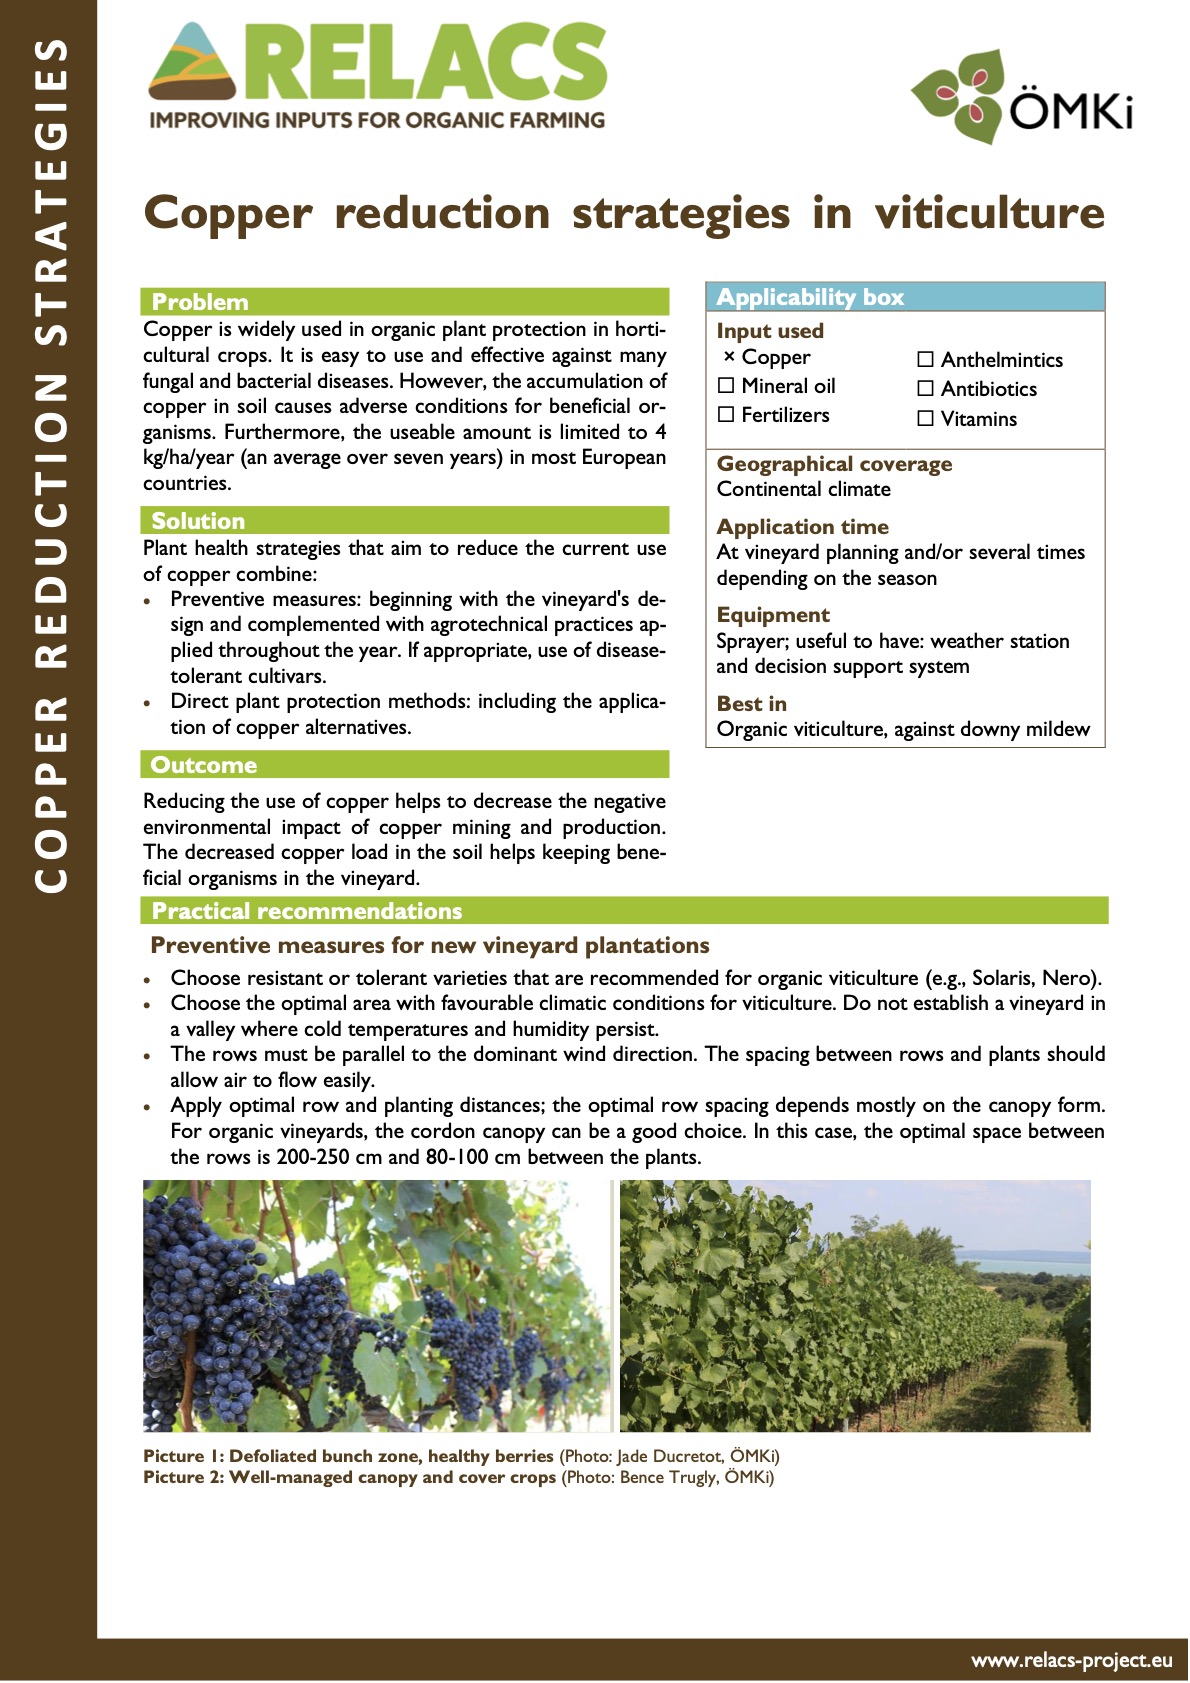 Strategie redukcji miedzi w uprawie winorośli (streszczenie praktyki RELACS)